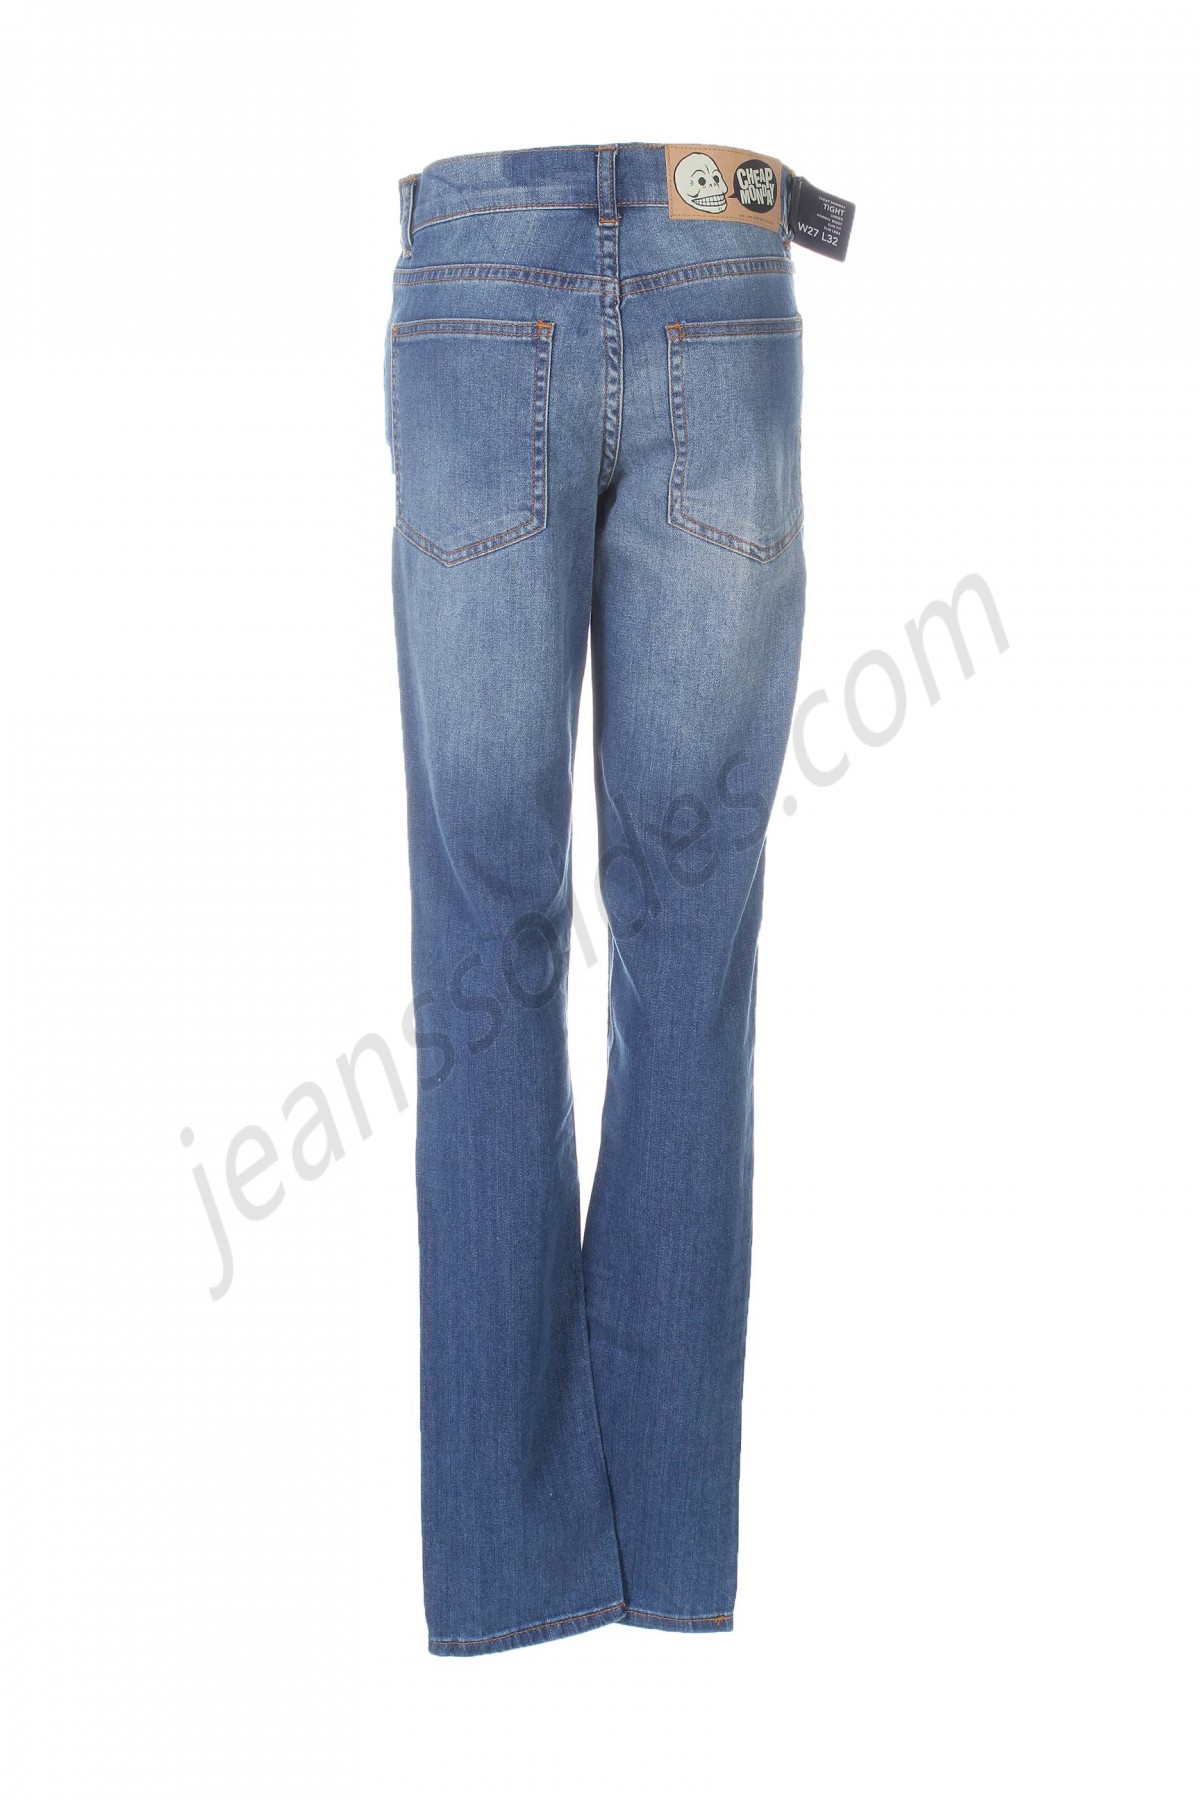 cheap monday-Jeans coupe slim prix d’amis - -1